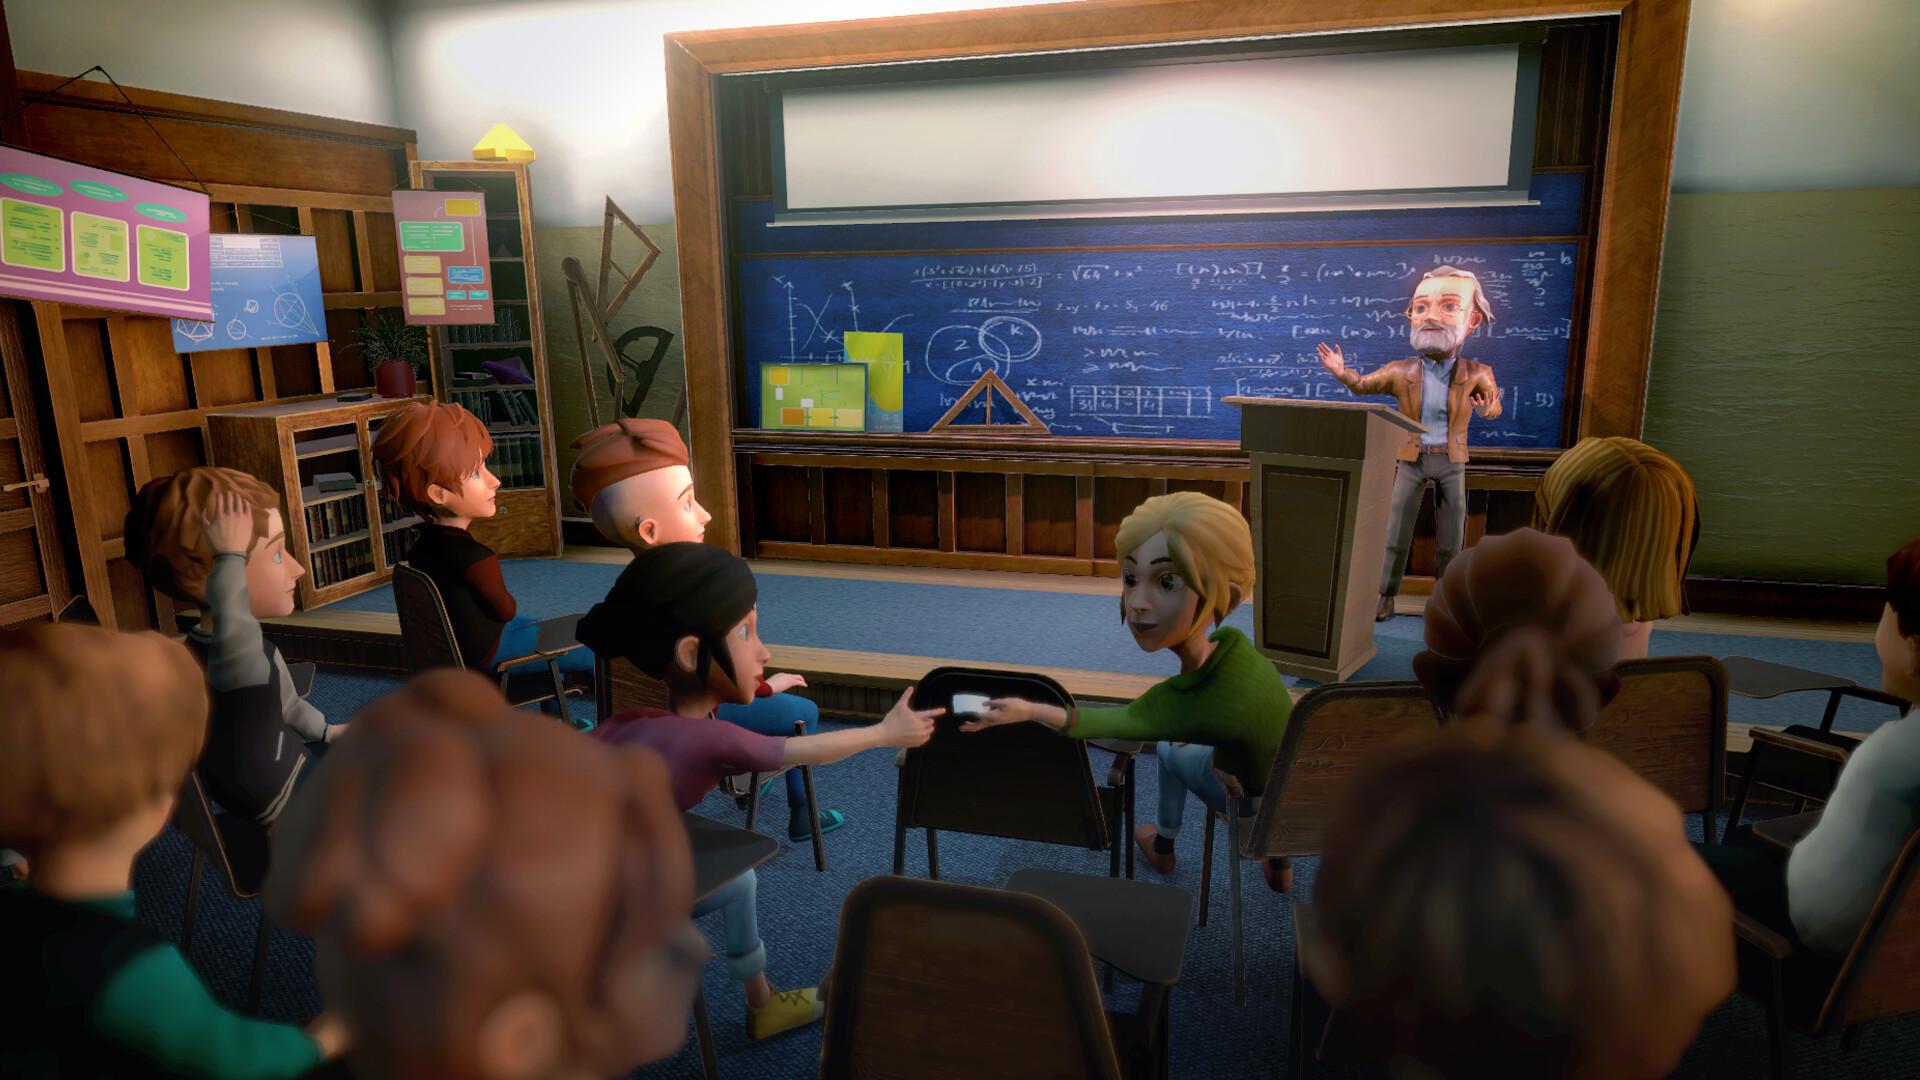 沉浸式模擬游戲《校園生活》現已登錄Steam平臺 6月推出試玩版